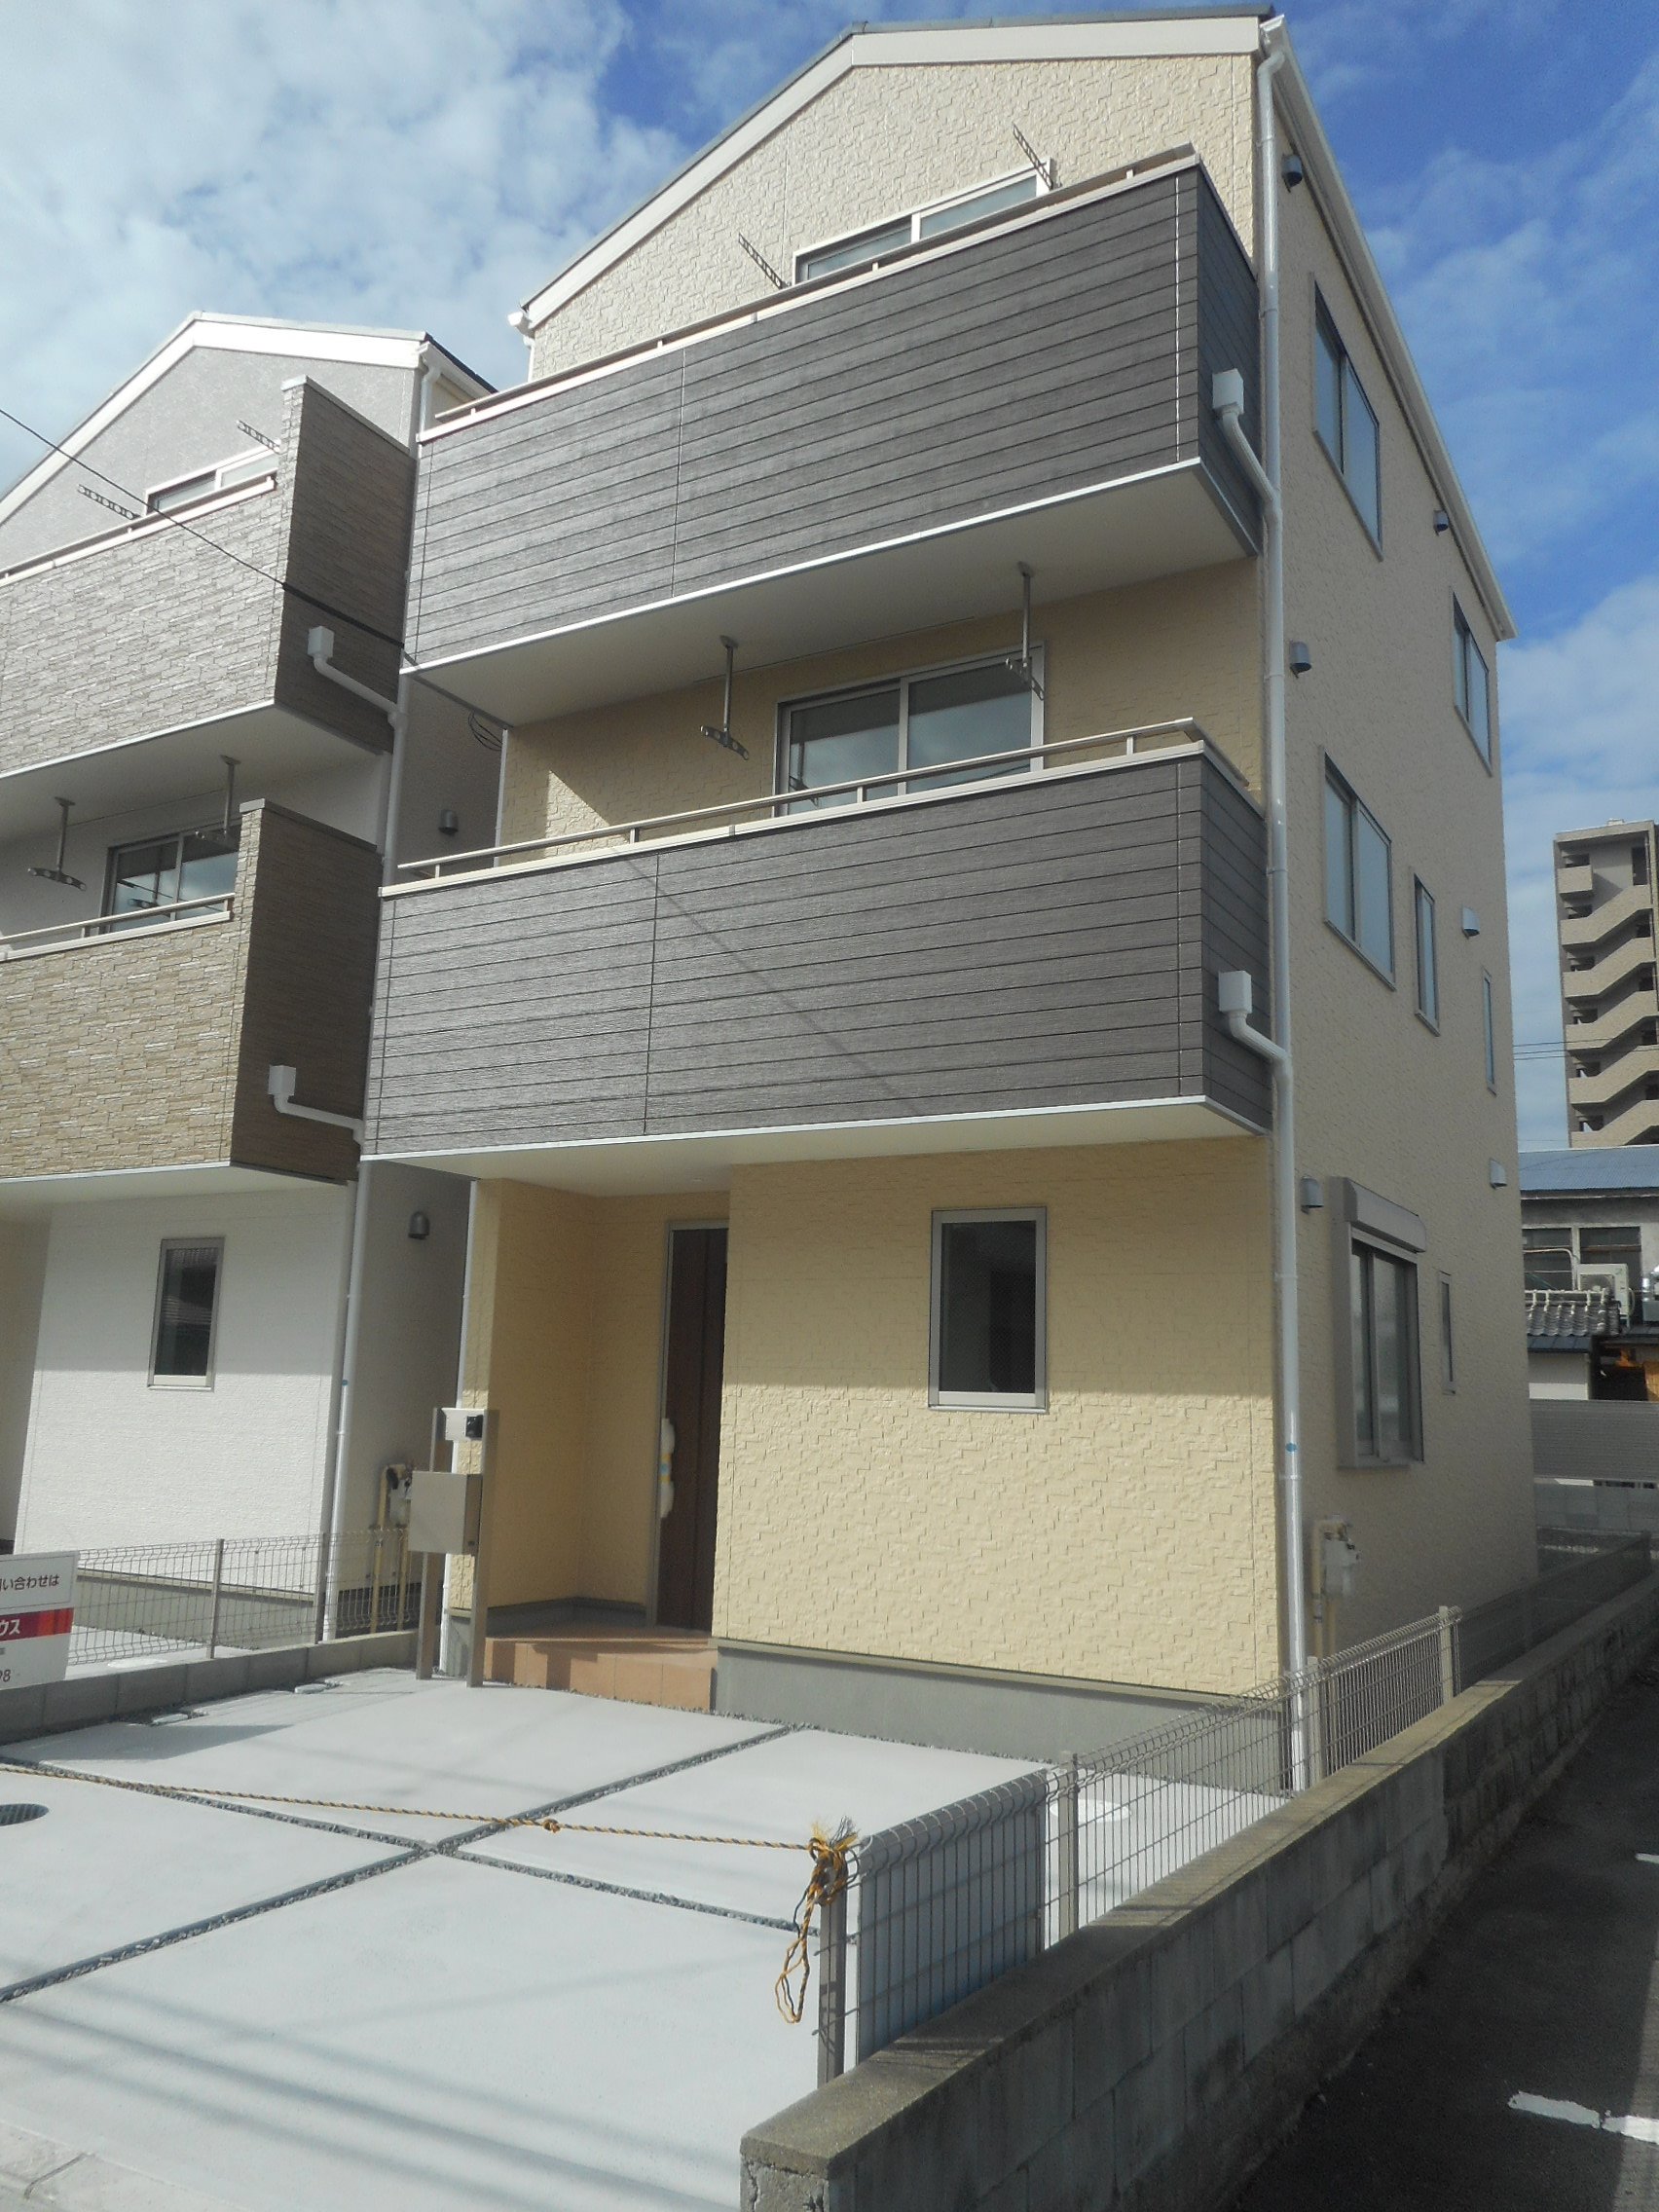 ☆新築 売戸建物件のご紹介☆ 5件ございます♪ 岡山市のペット可賃貸戸建賃貸・売買・管理に関しましては有限会社西